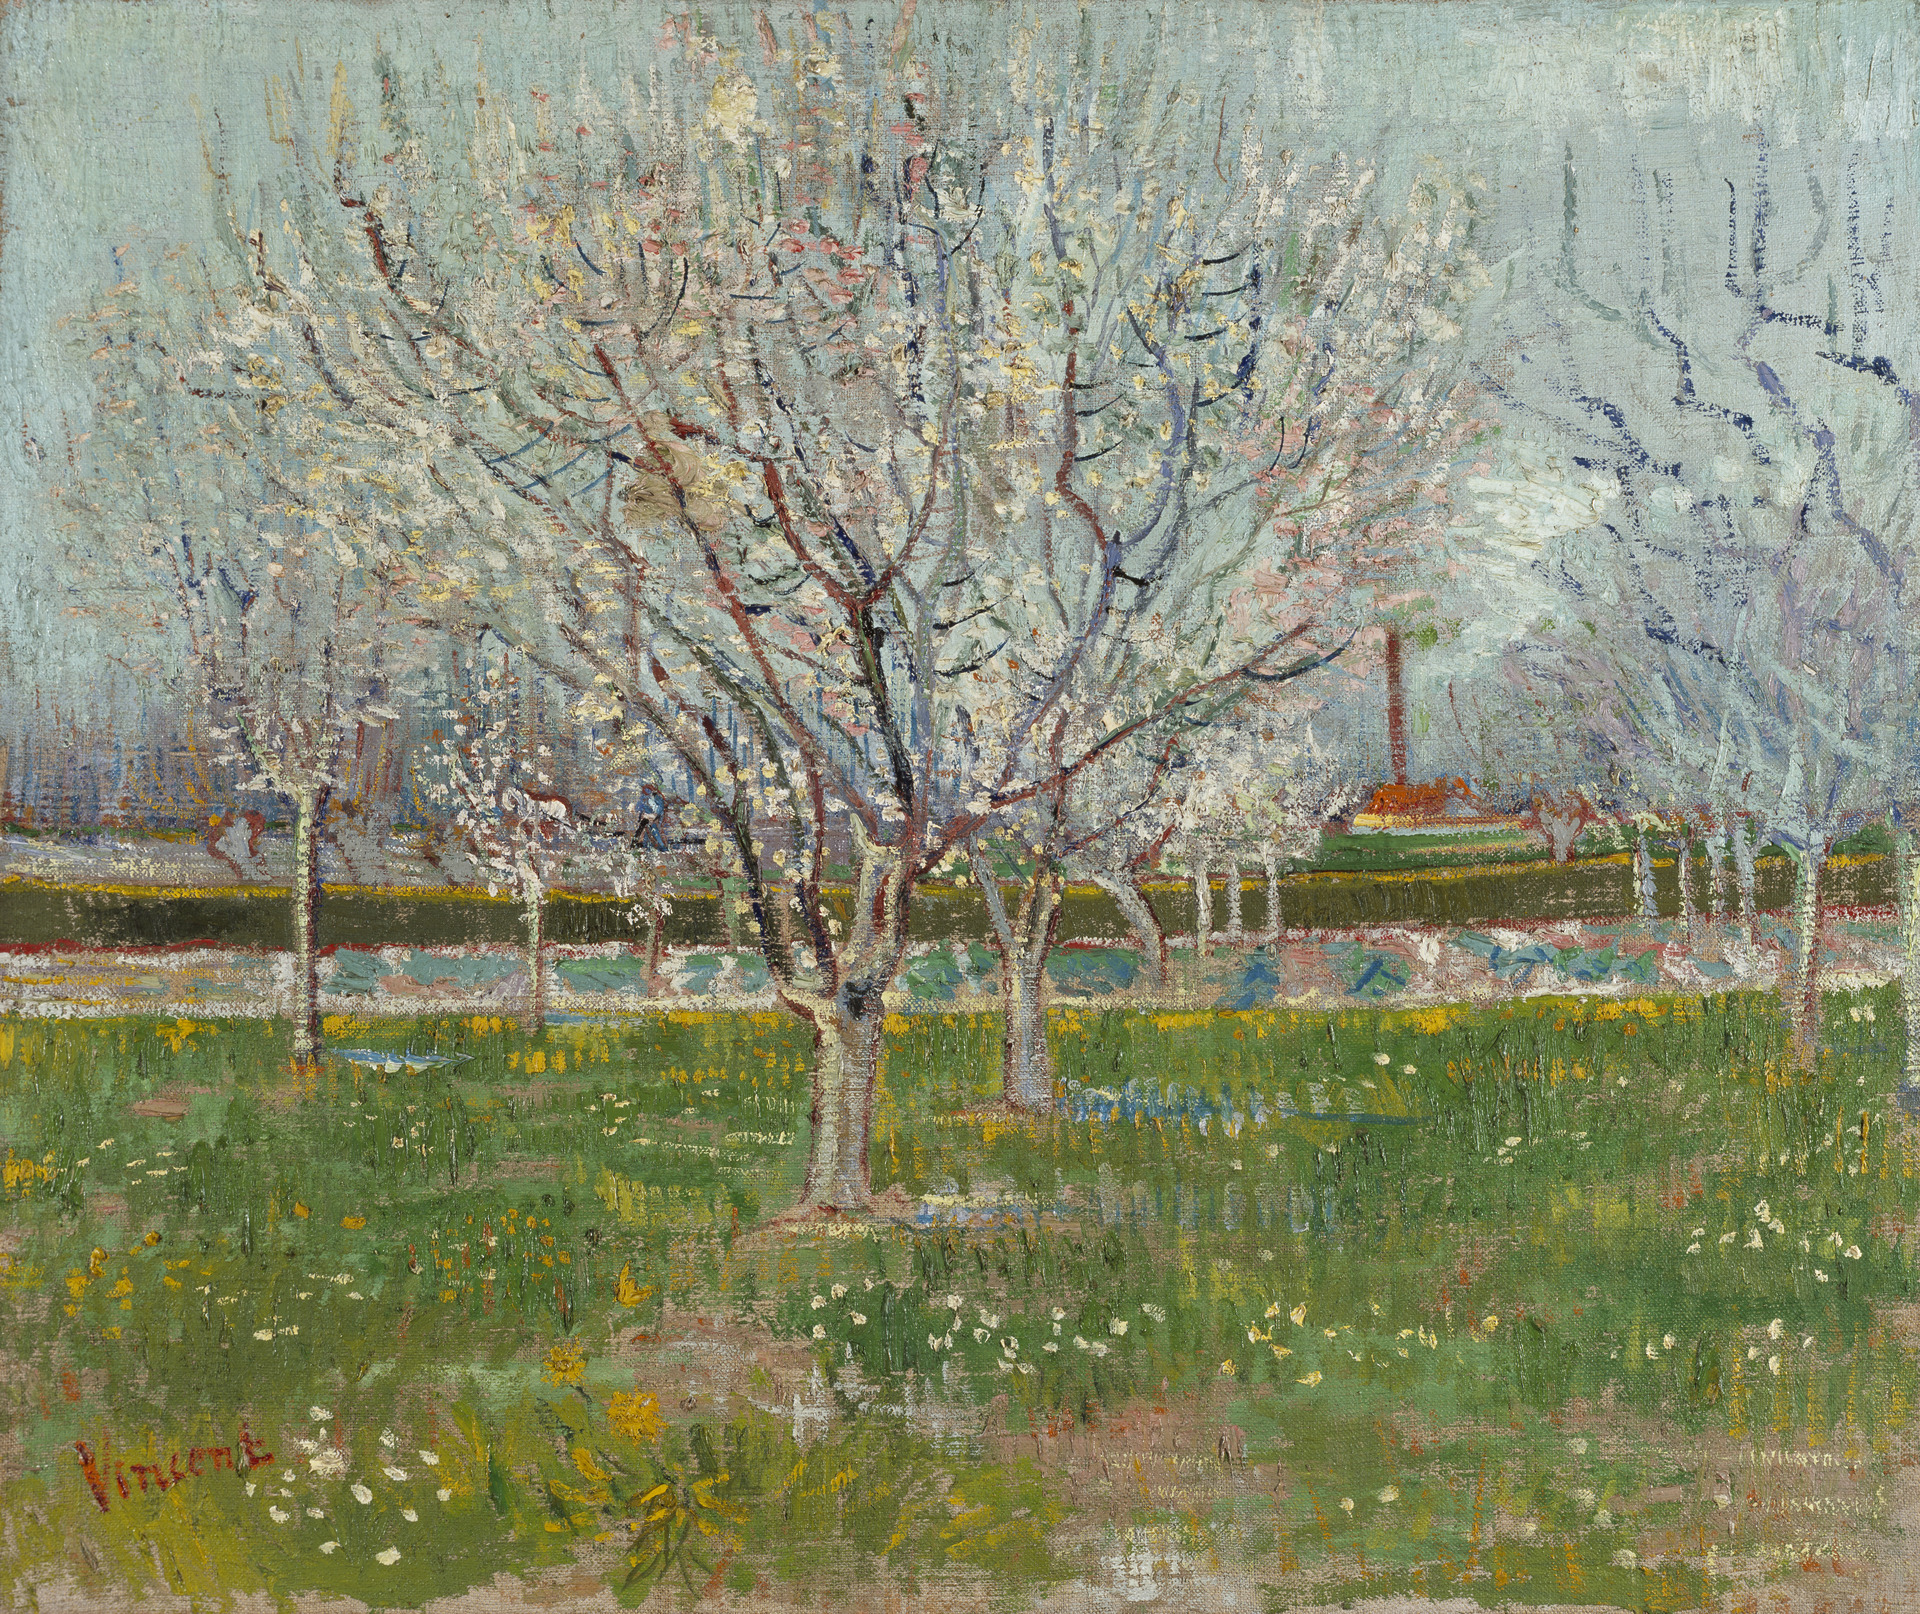 Virágzó gyümölcsöskert by Vincent van Gogh - 1888 - 54.00 x 65.20 cm 